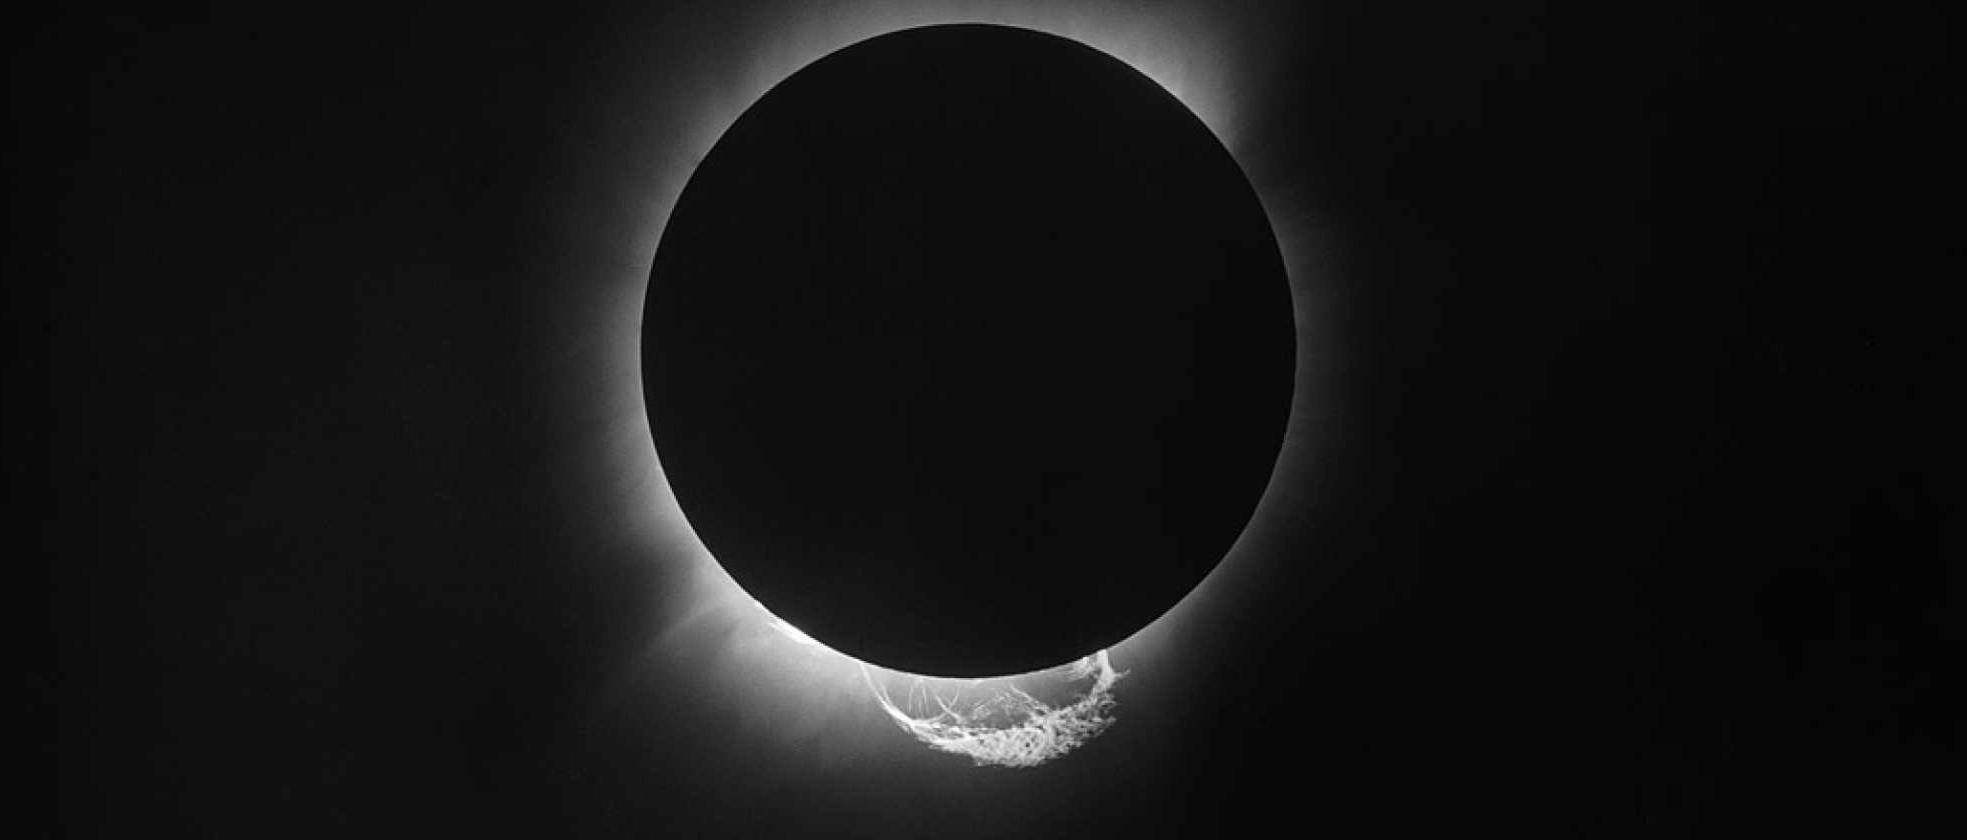 L'éclipse totale du Soleil du 29 mai 1919 photographiée à Principe par Arthur Eddington et Edwin Cottingham. © Royal Astronomical Society